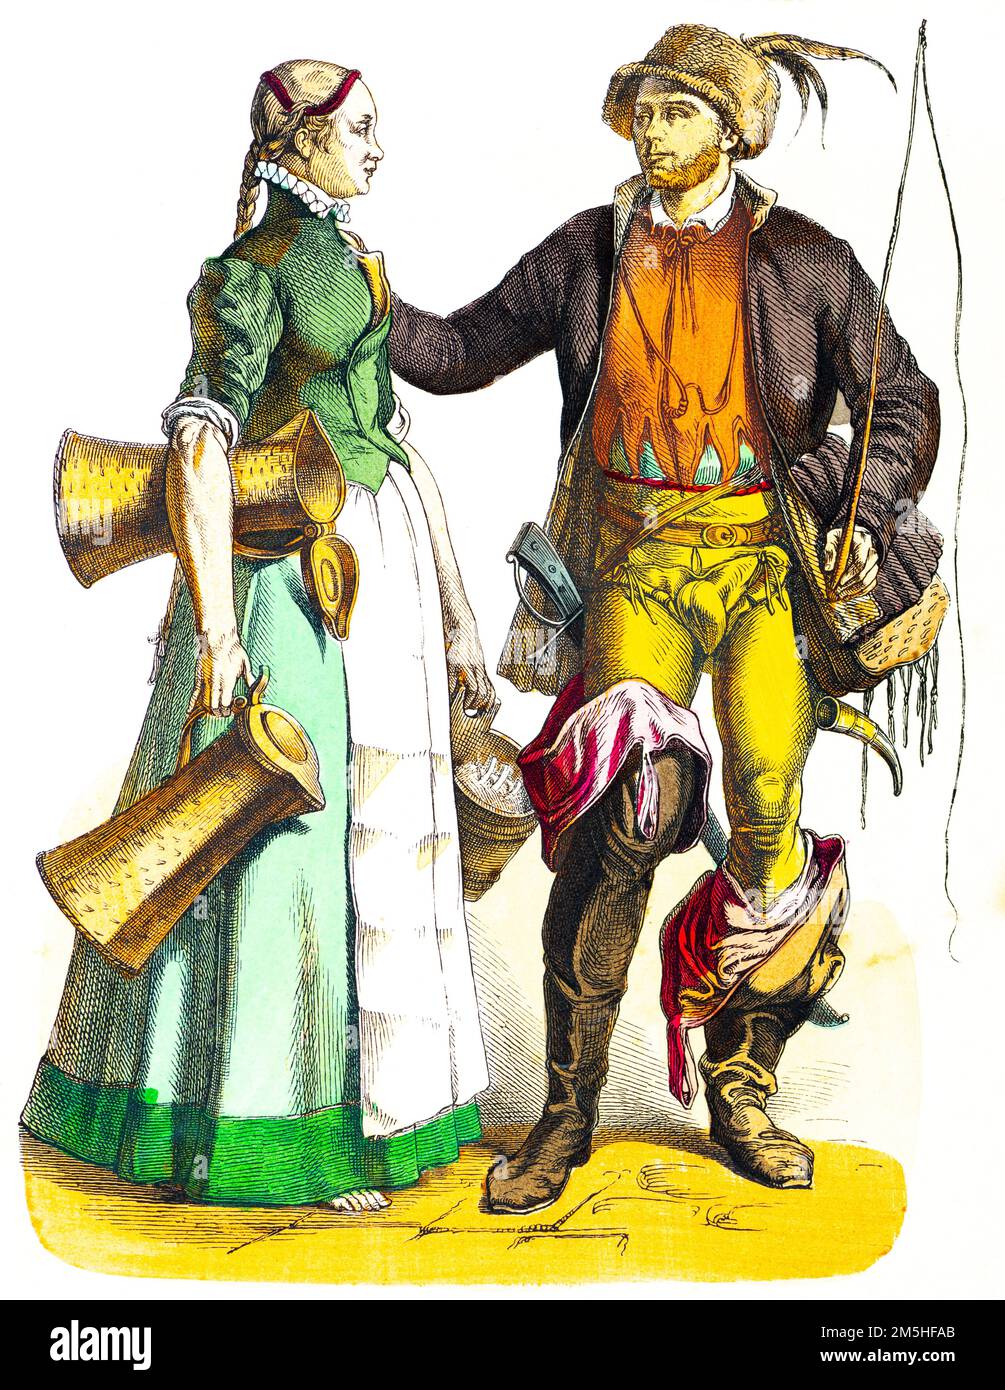 Maidservant et main de calèche de Nuremberg, Allemagne, costumes, fin du 16th siècle, illustration de l'histoire colorée, Münchener Bilderbogen 1890 Banque D'Images